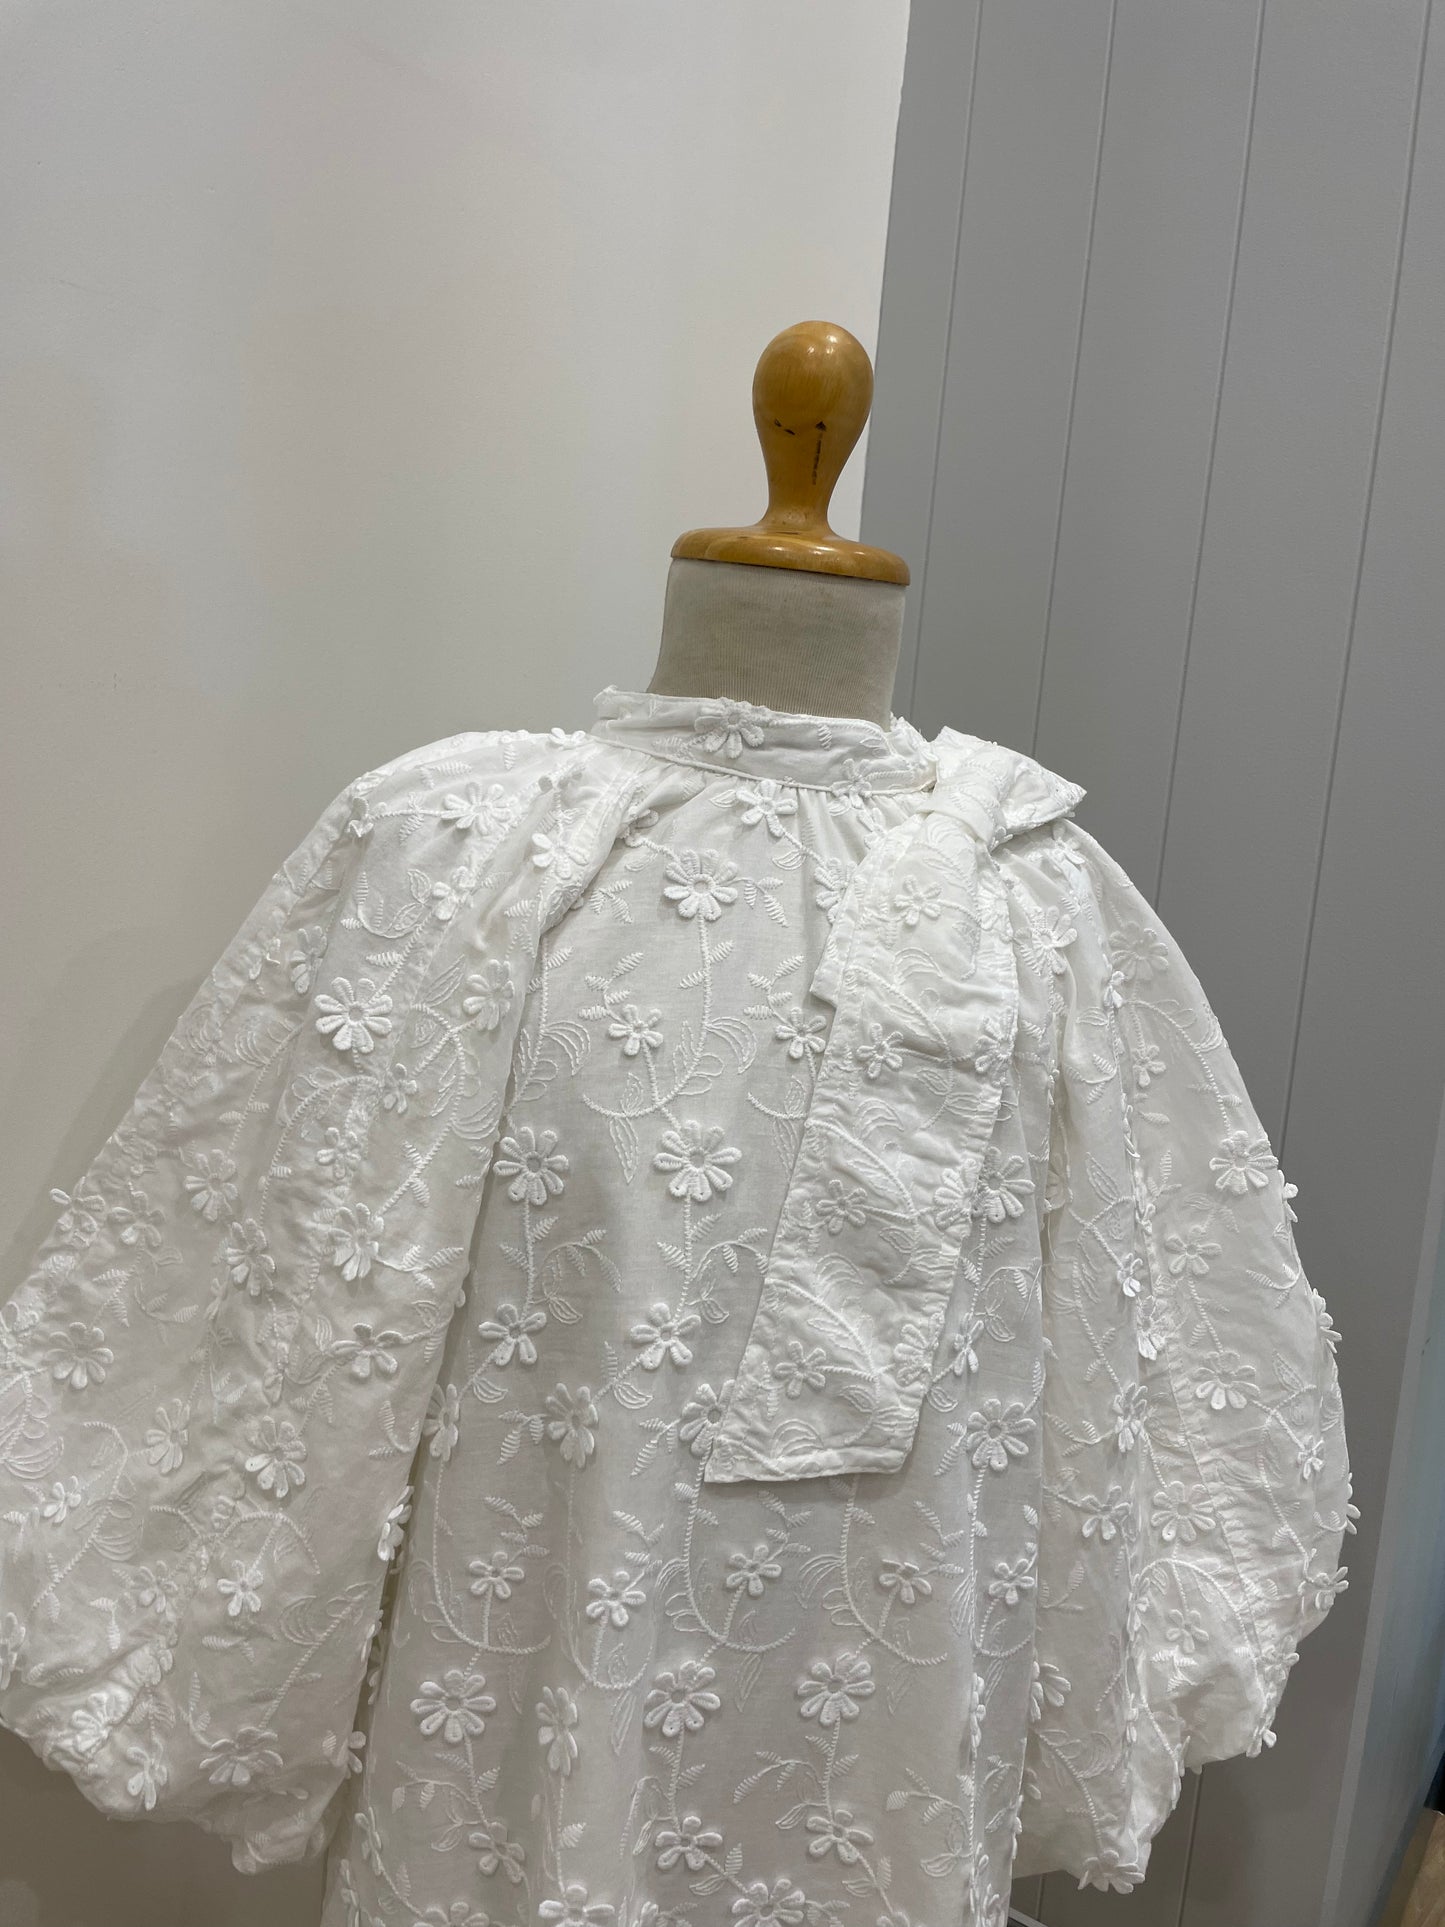 Petite Amalie White Applique Voile Bow Dress